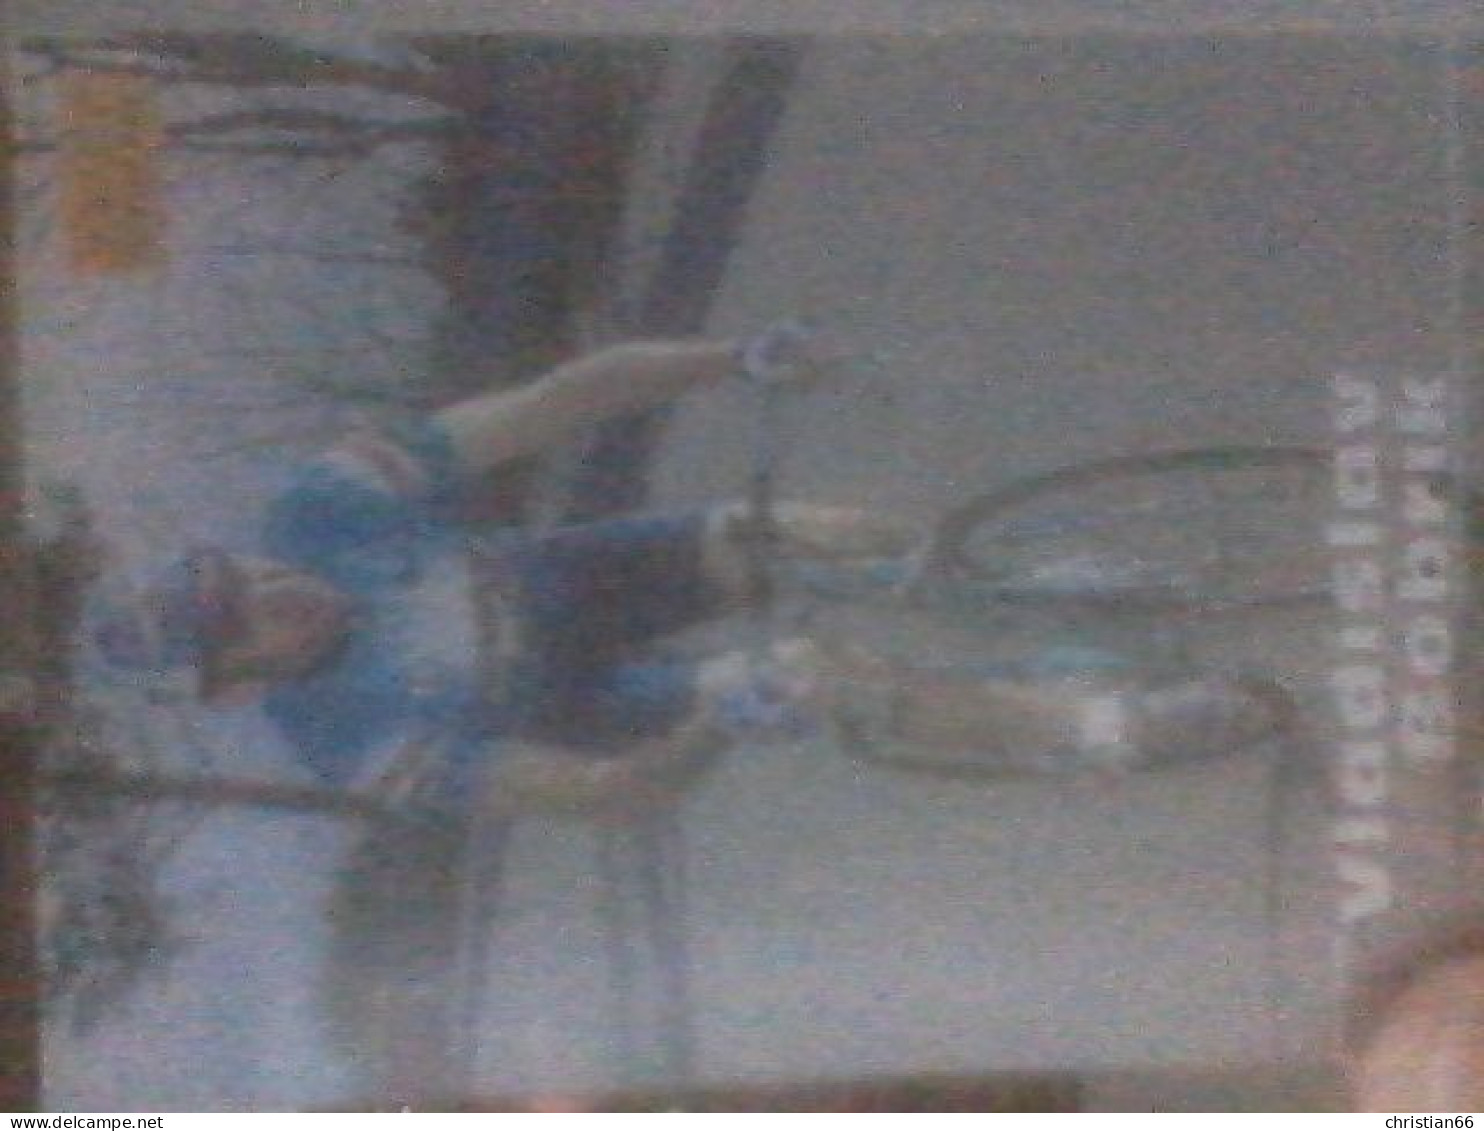 CYCLISME 1996  : PETITE CARTE VLADISLAV BOBRIK TEAM GEWISS  (série Merlin Ultimate) - Cyclisme